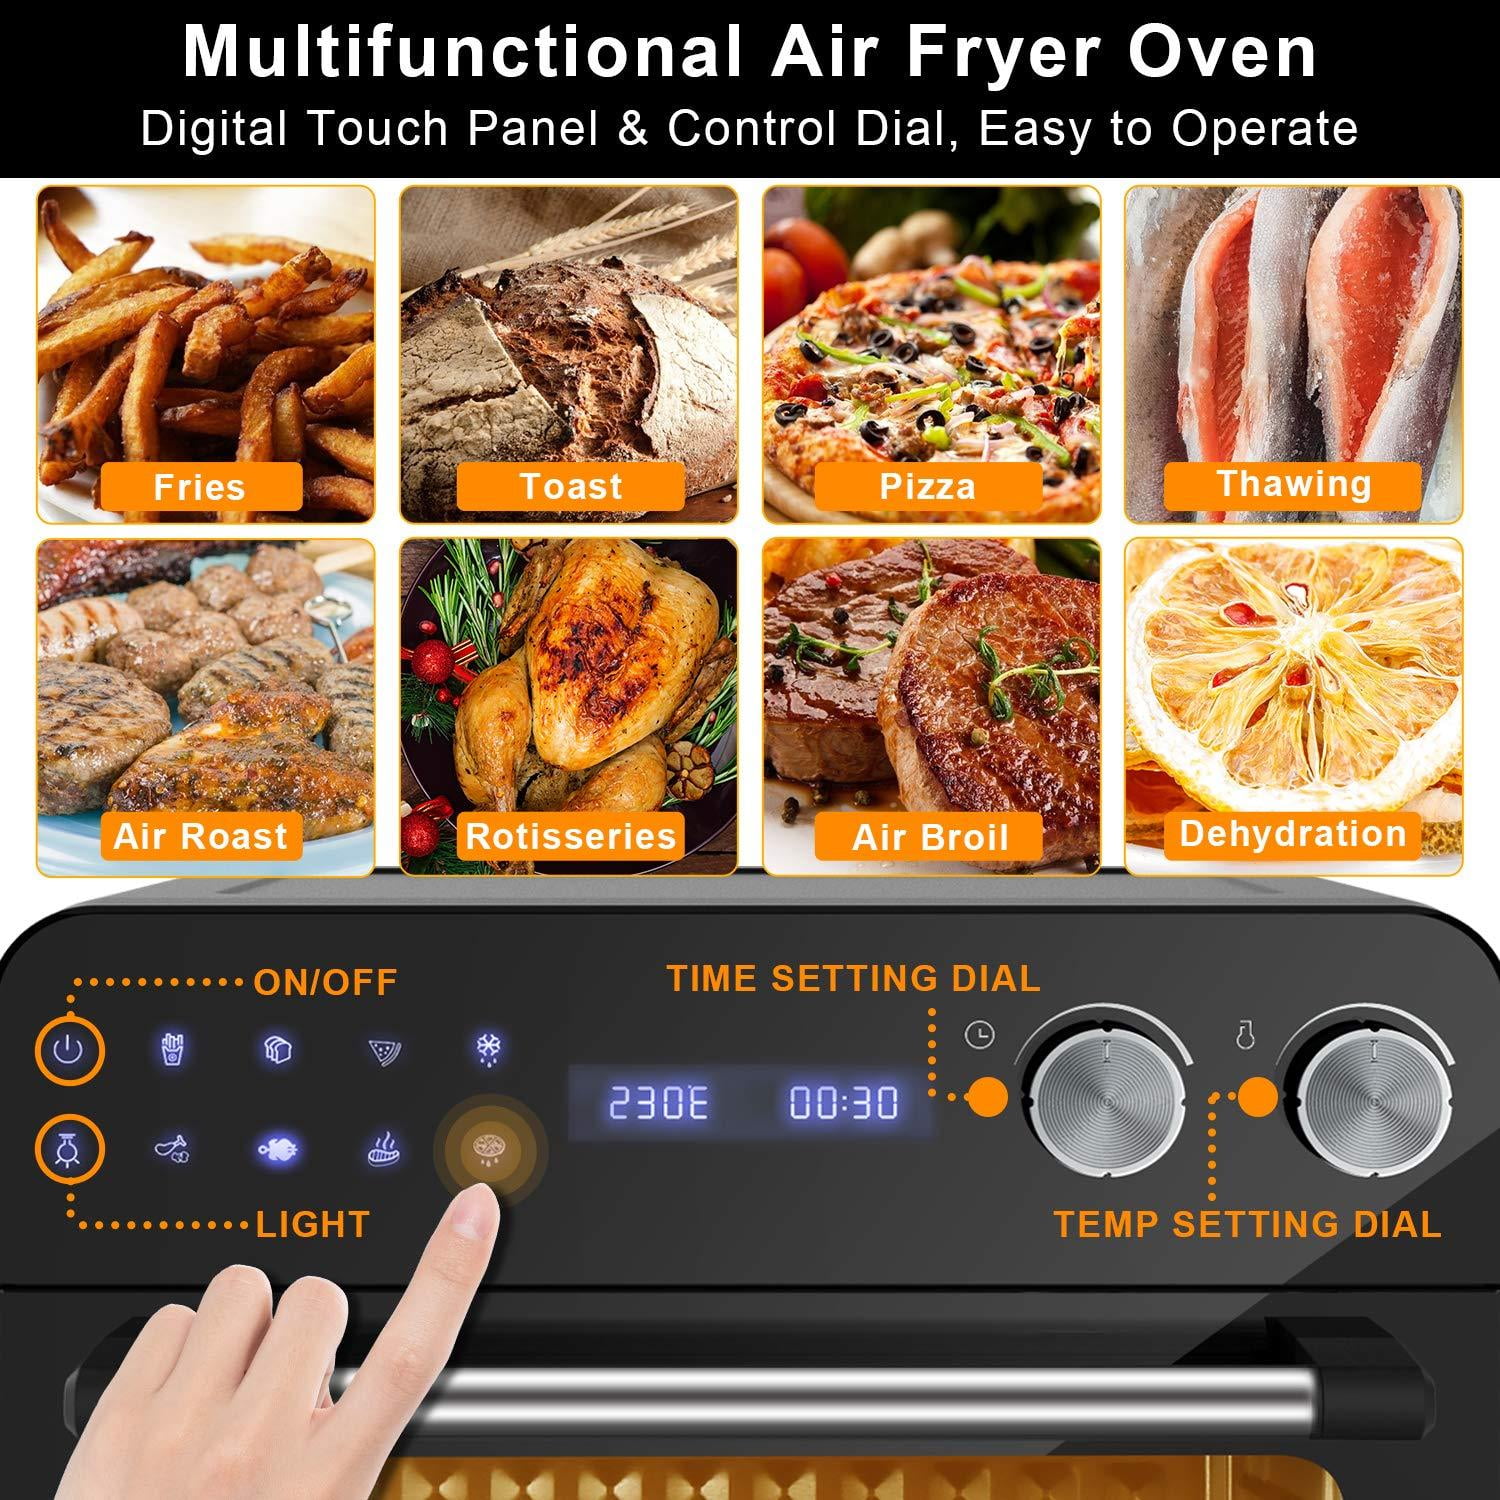 Moosoo Air Fryer, 24.3 Quart Air Fryer Oven, Stainless Steel Body